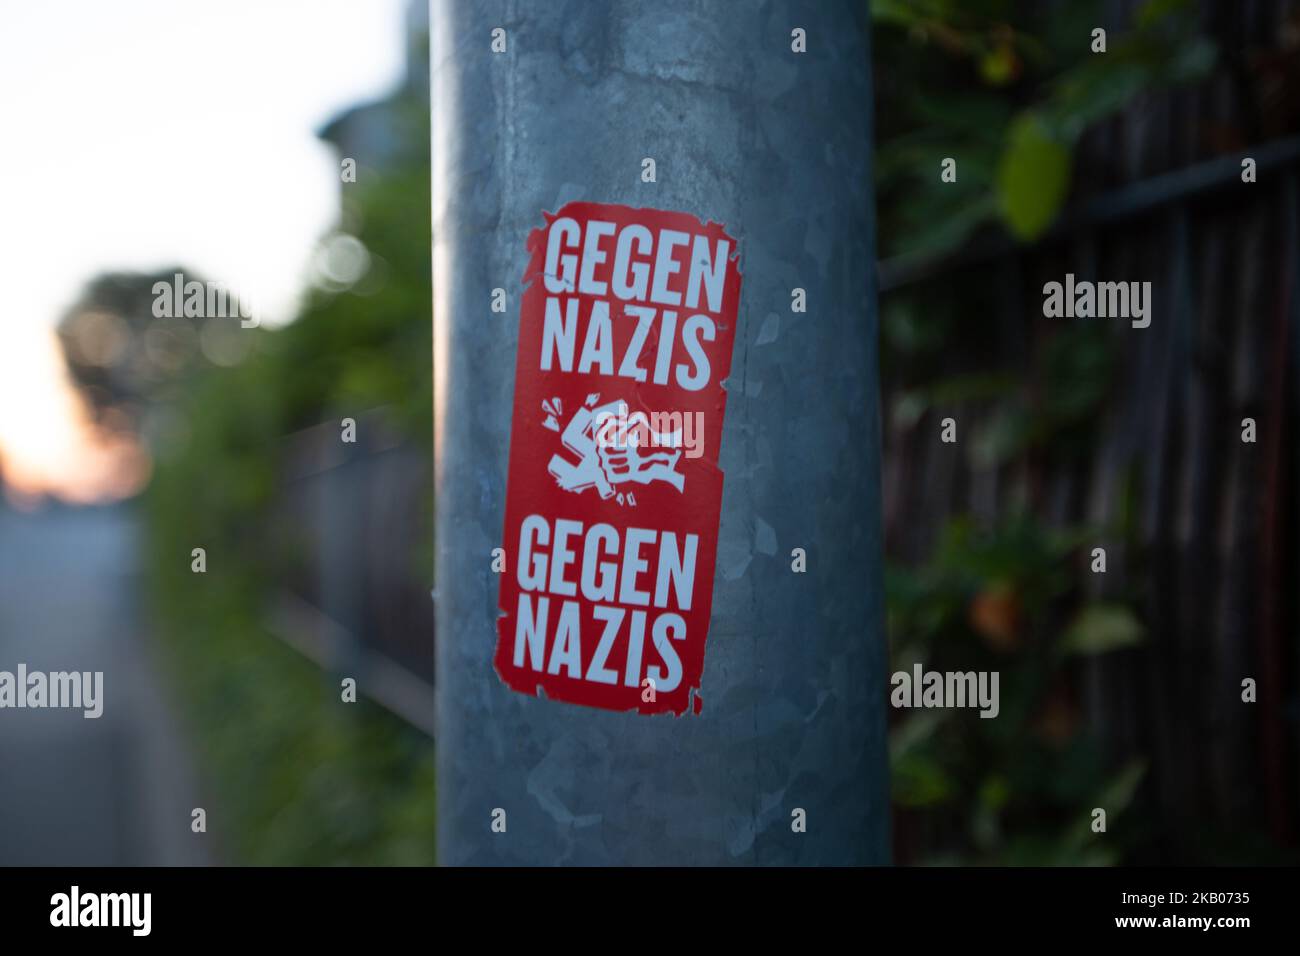 Un adesivo visto a Bamberga, Baviera settentrionale, Germania che dichiara 'Gegen Nazis / Gegen Nazis'. C'è un pugno che puncia uno Svastika. (Foto di Alexander Pohl/NurPhoto) Foto Stock